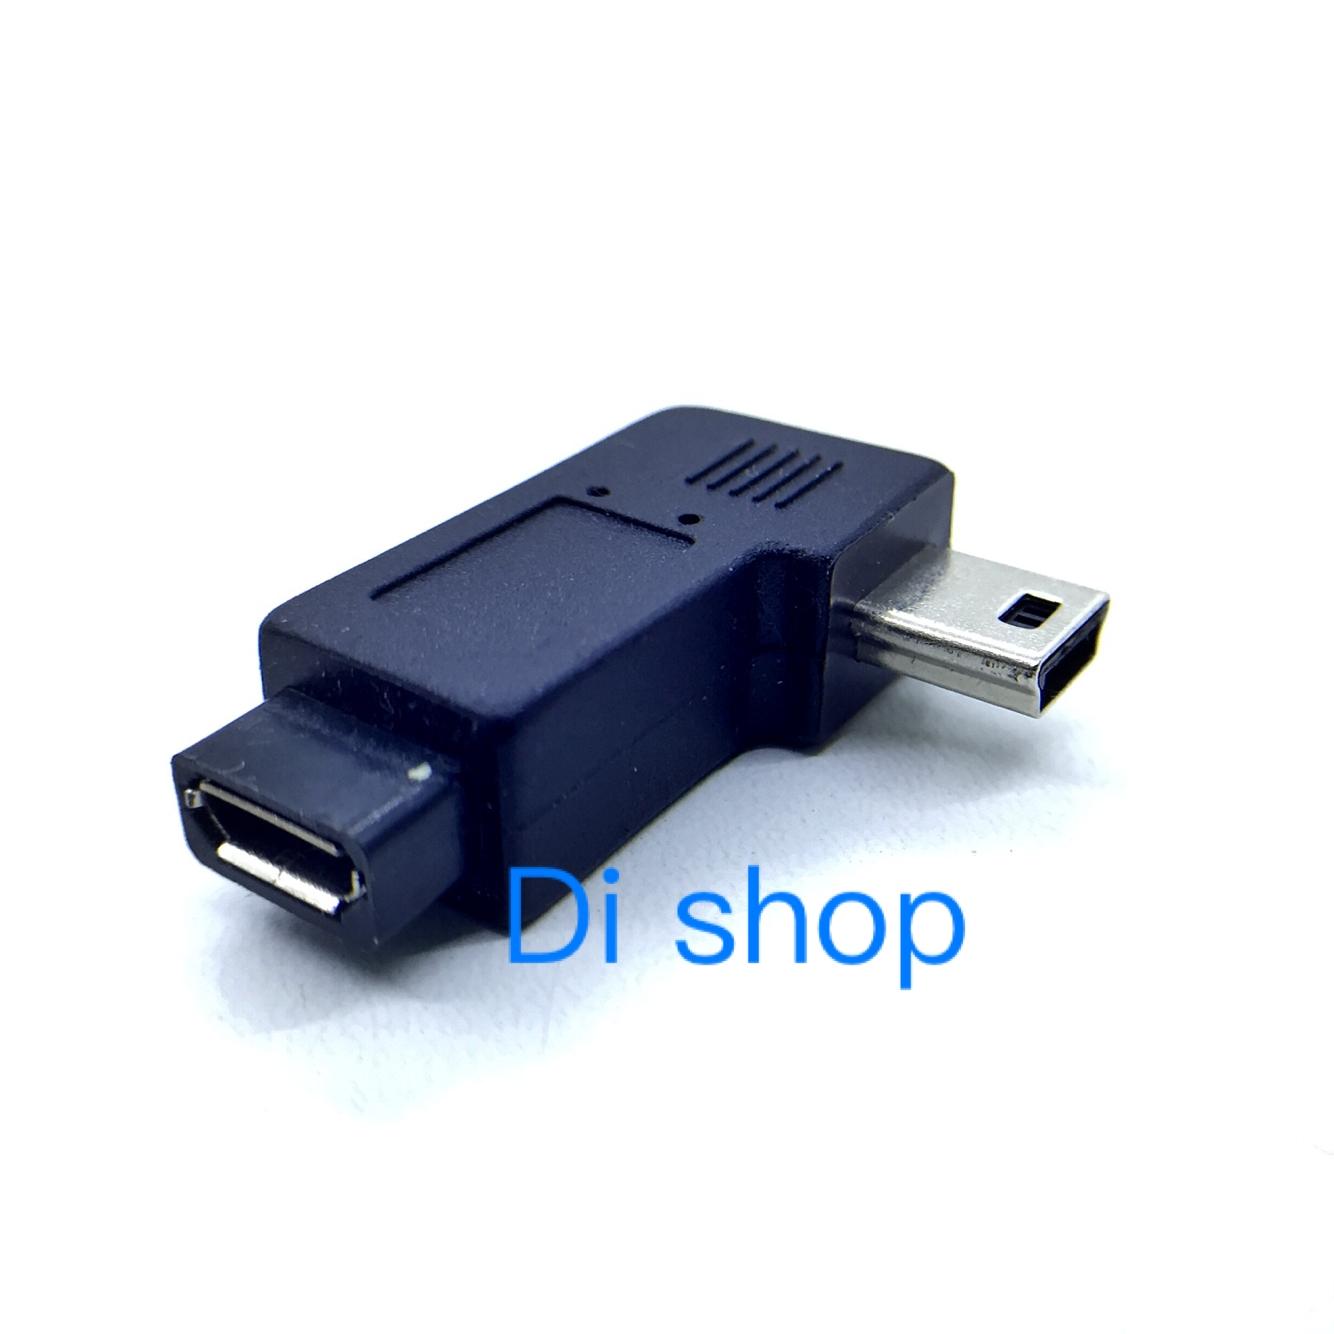 Di shop 90 Degree Micro USB Female to mini USB Male Date Transfer Adapter Connector(Black)-right - intl